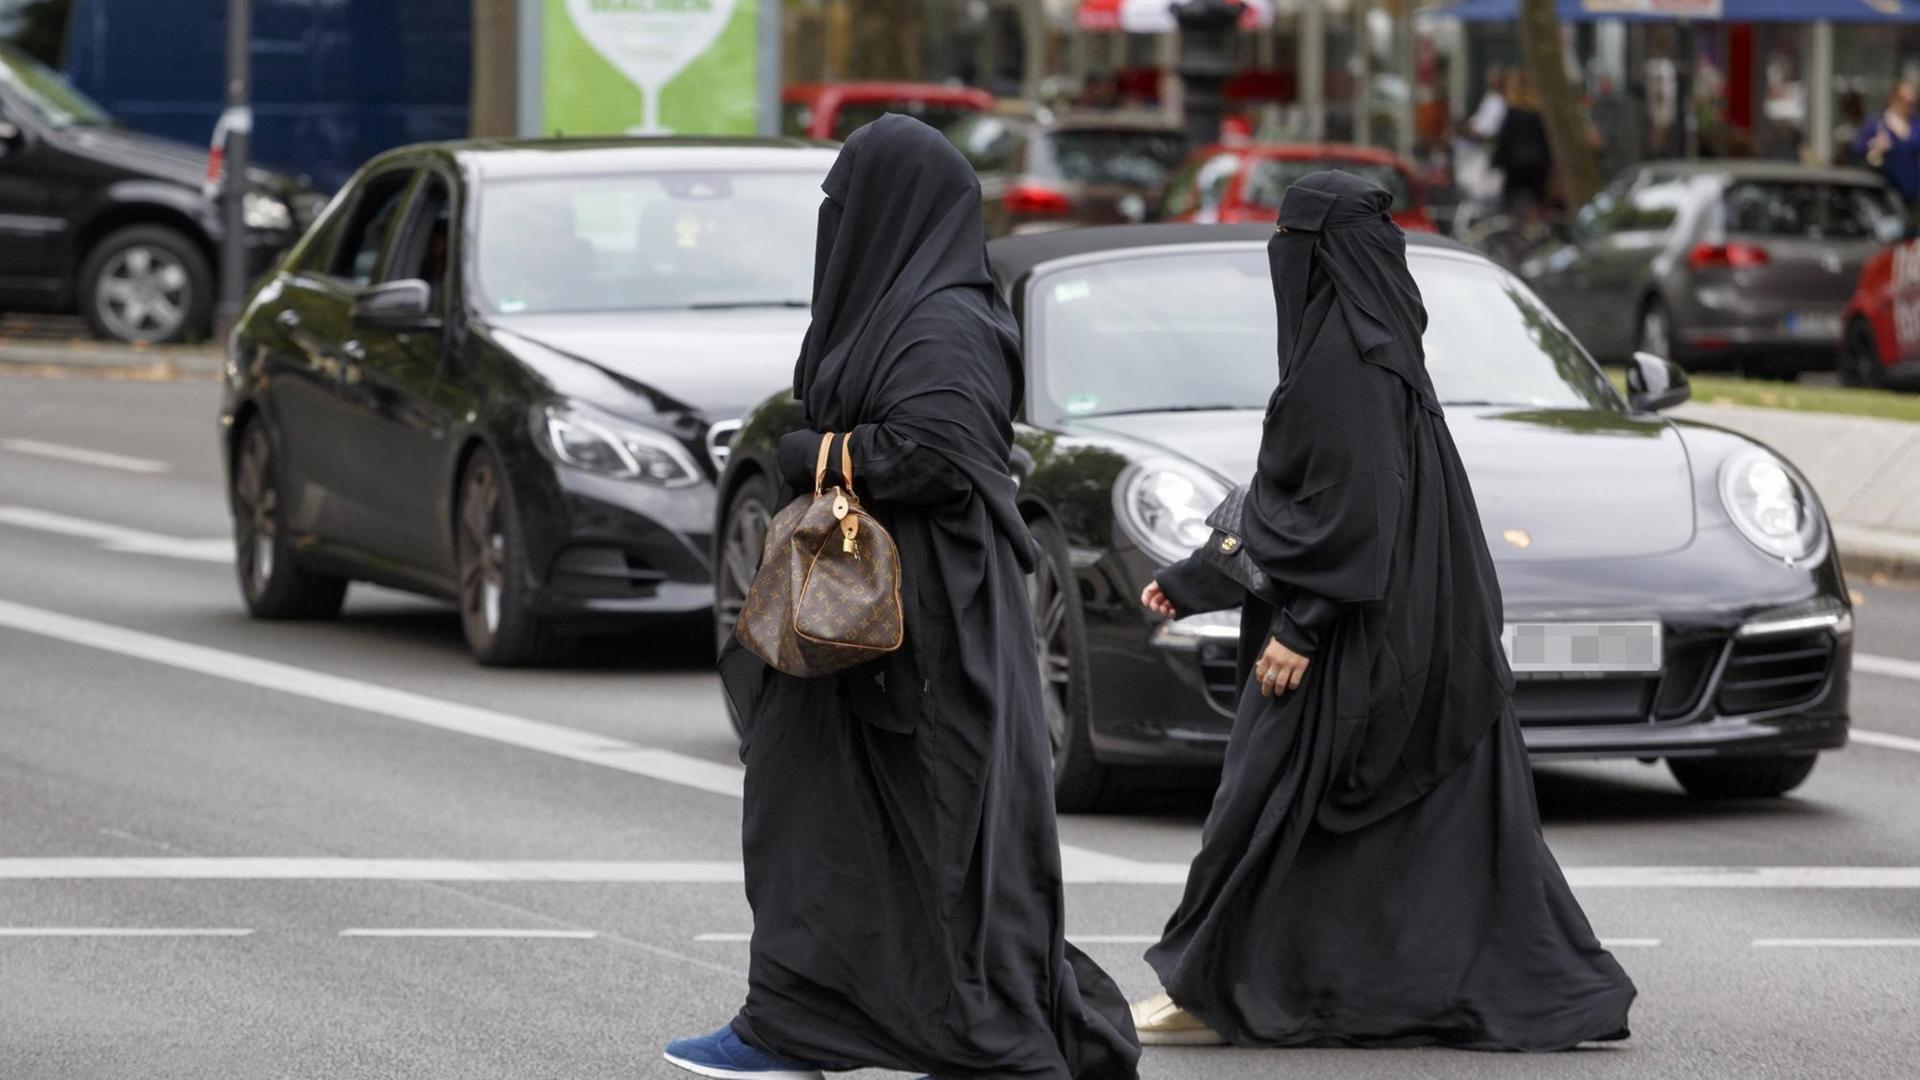 Zwei Frauen in Niqab.